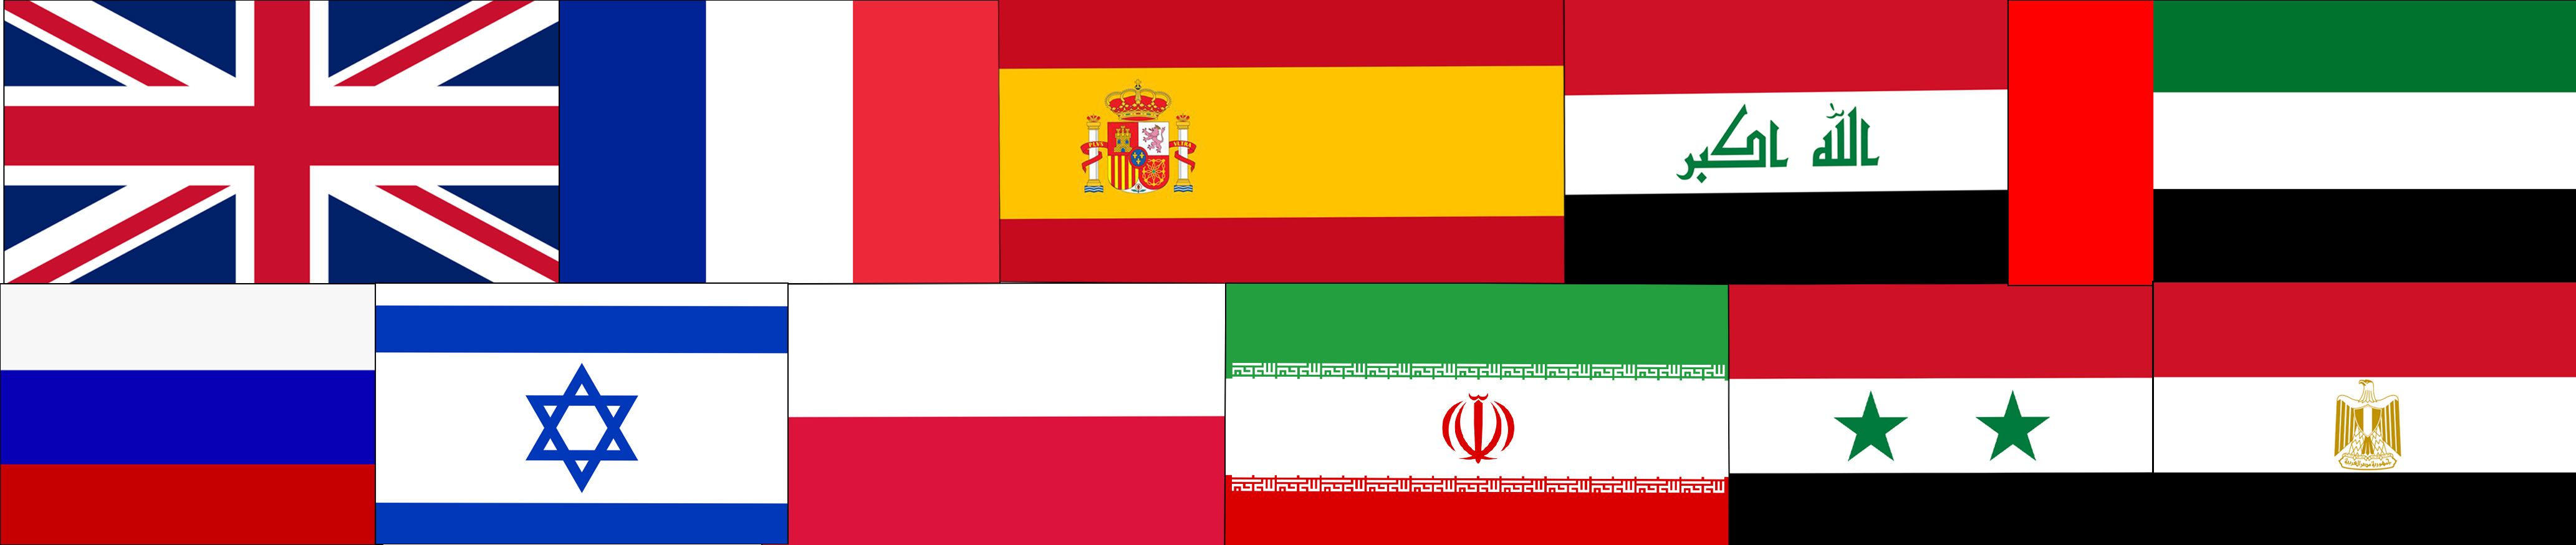 Bilderstreifen mit verschiedenen Flaggen